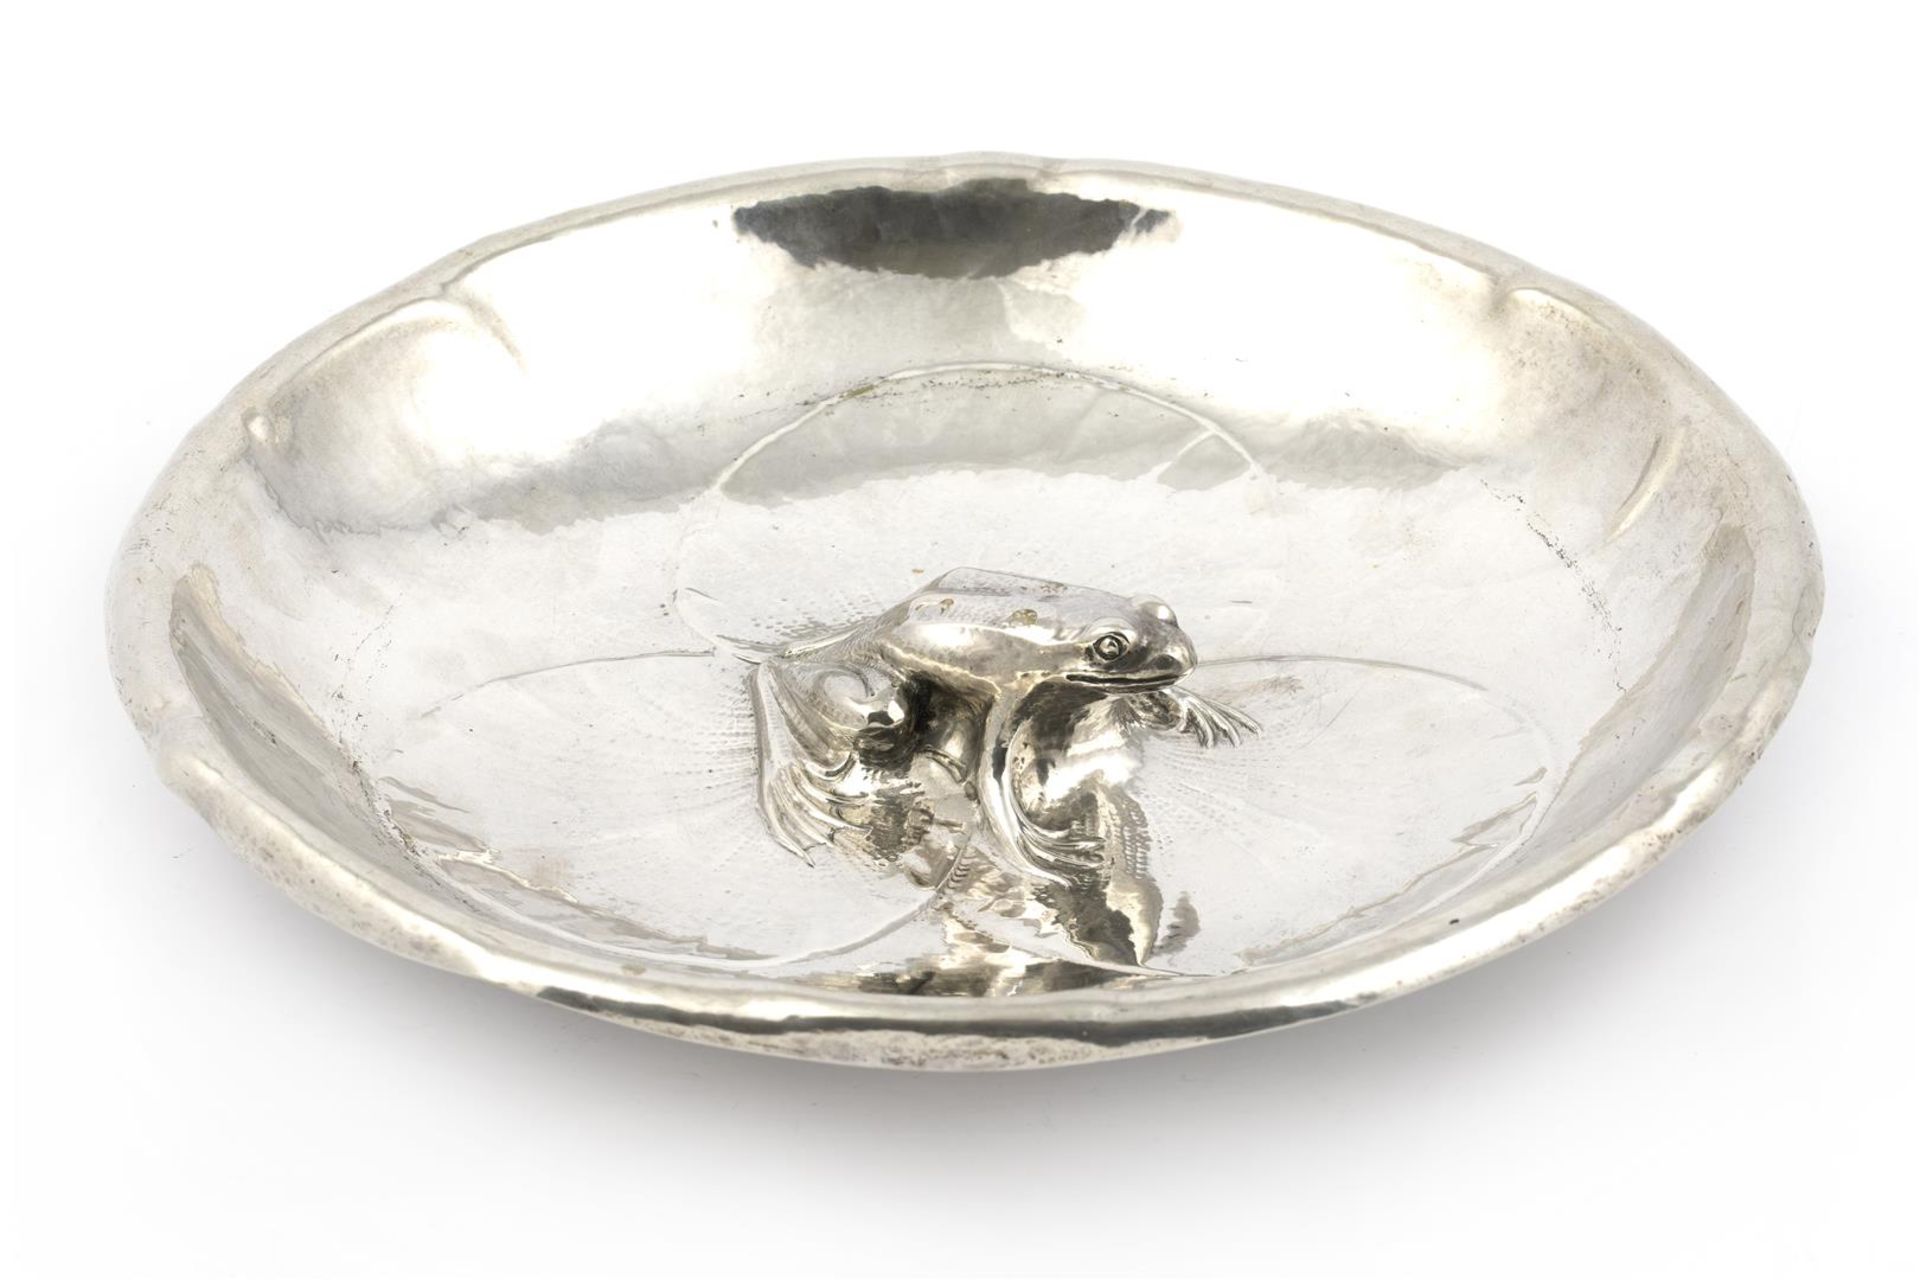 gedreven zilveren sierschaal, zogenaamde kikkerschaal, met voorstelling van kikker op waterlelie.